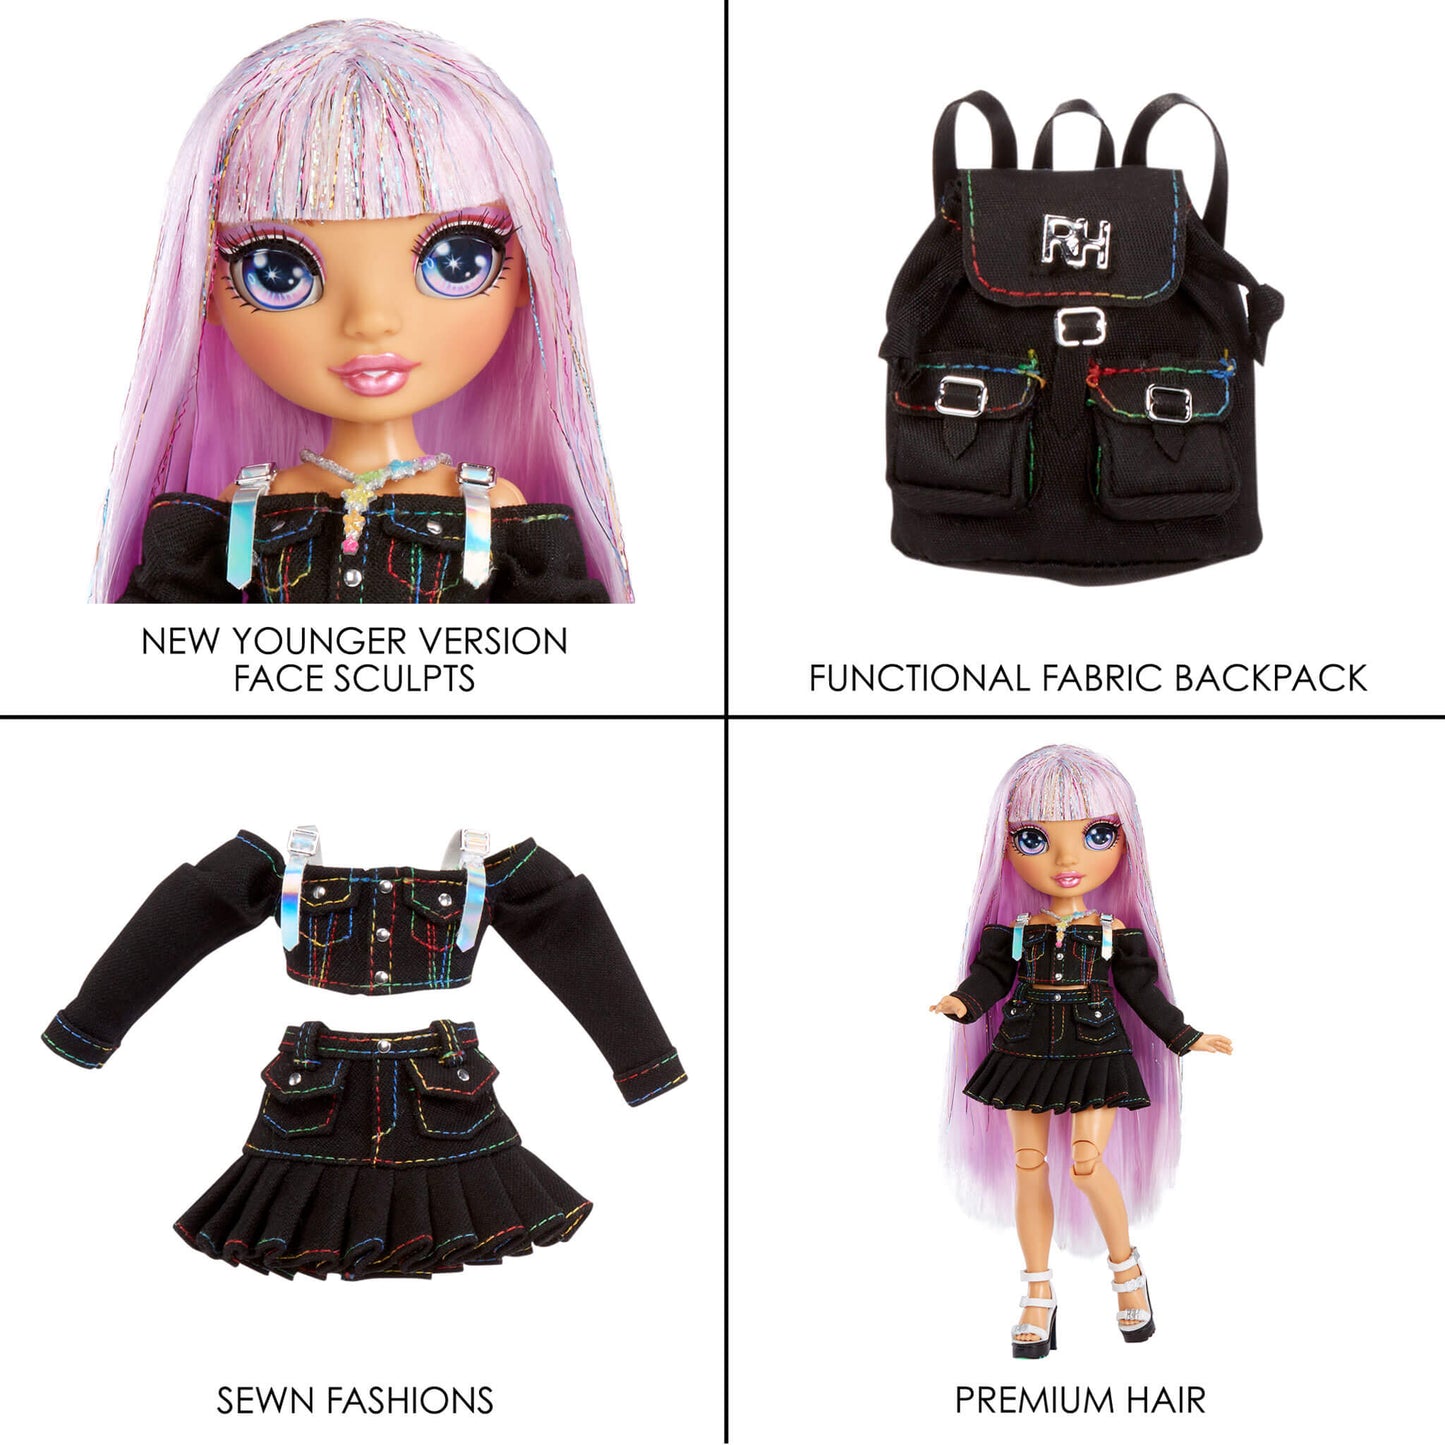 Rainbow High Junior High Special Edition Doll Asst 1 Wave 1